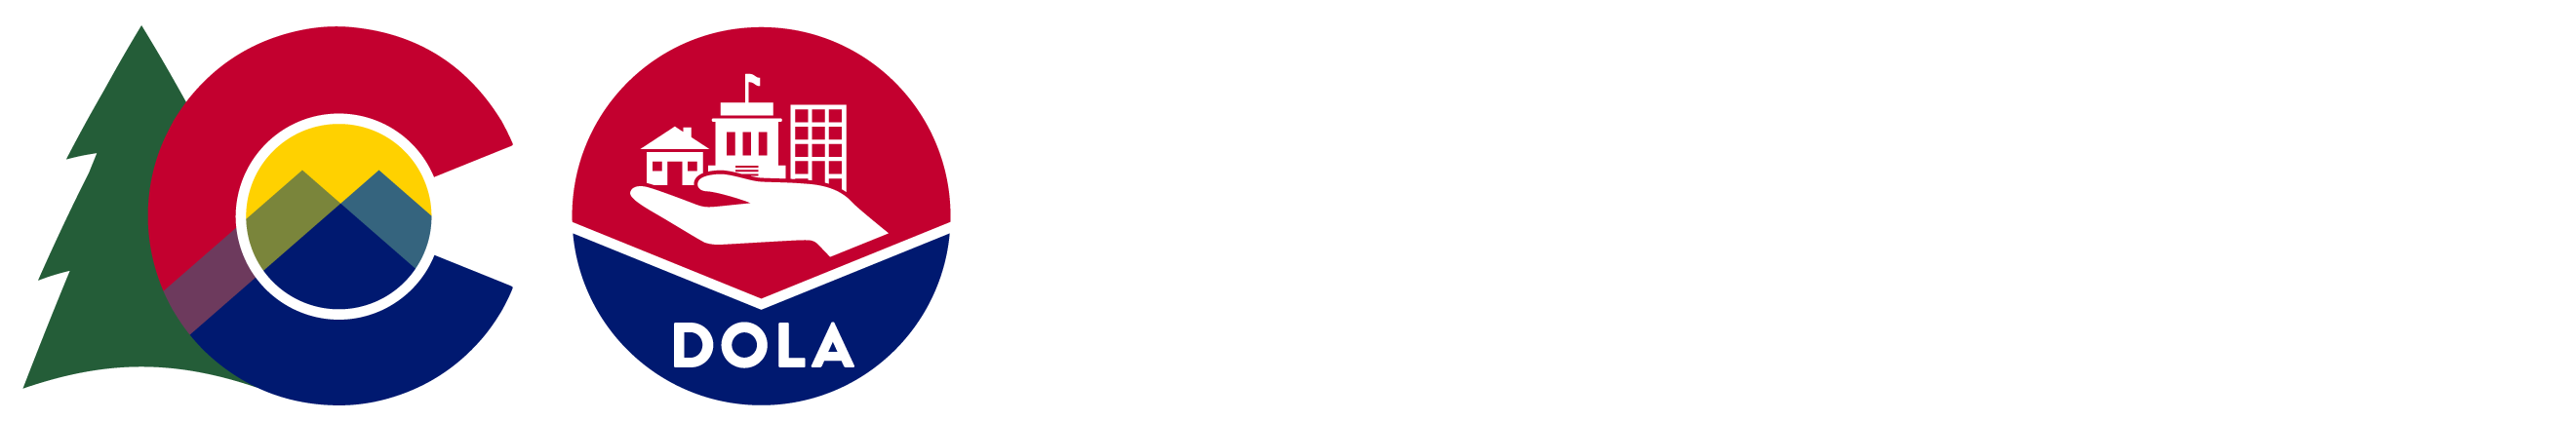 Colorado Department of Local Affairs